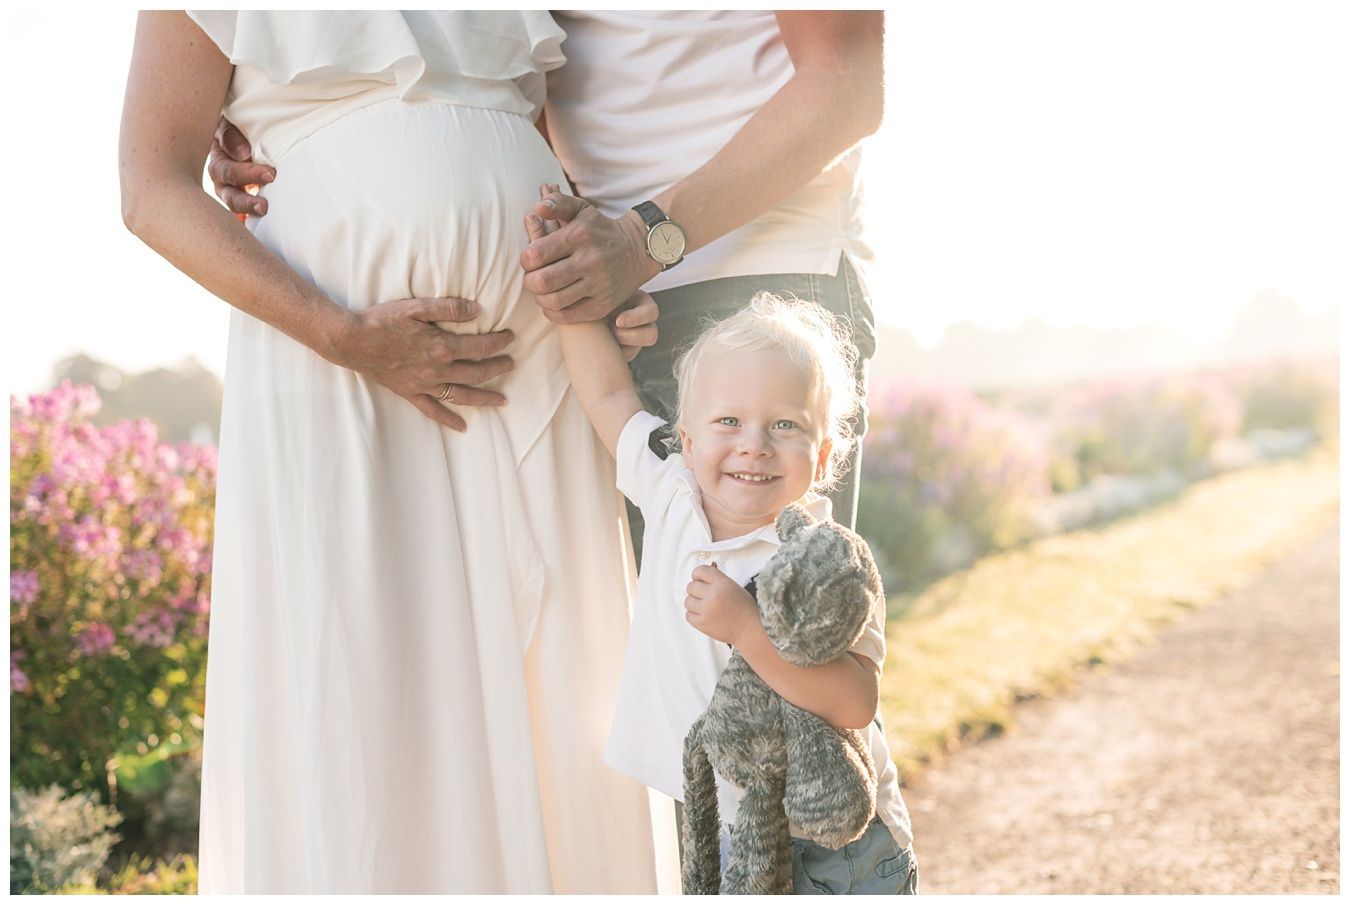 schwangerschaftsshooting-babybauchshooting-mit Geschwisterkind-schwangerschaftsfotograf-schwangerschaftsfotoshooting-muenchen